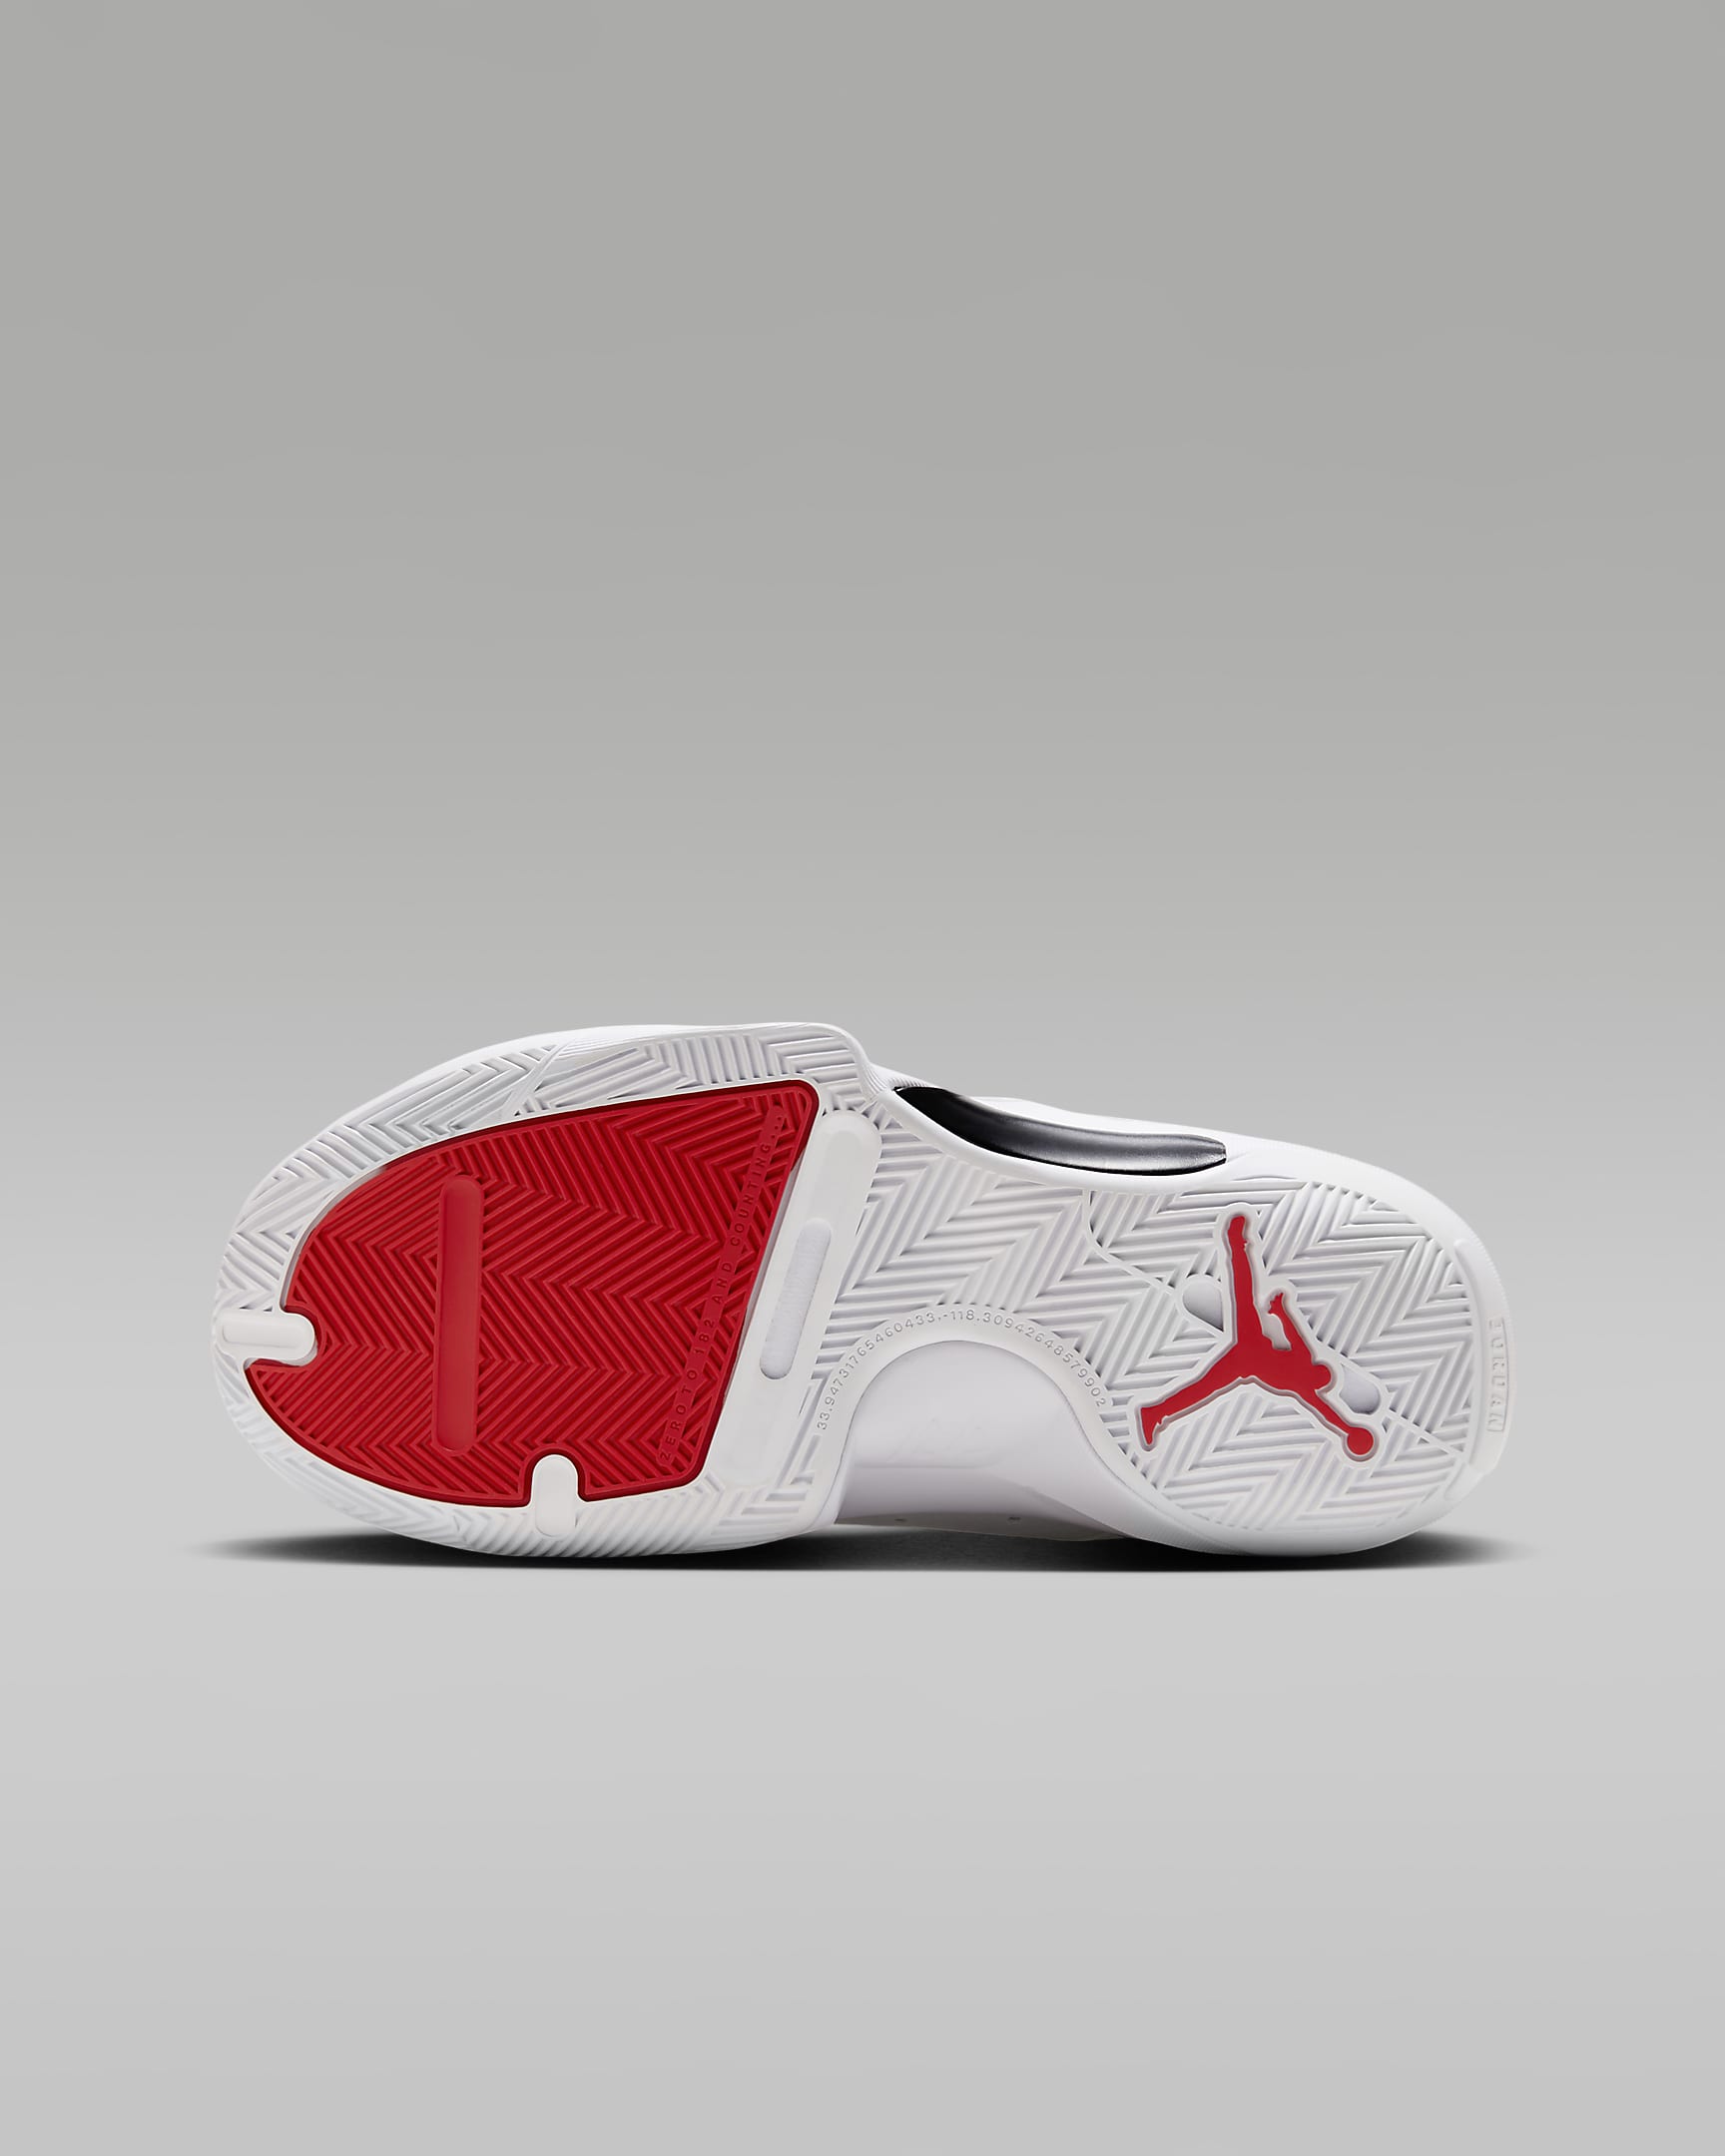 Jordan One Take 5 Older Kids' Shoes - White/Black/University Red